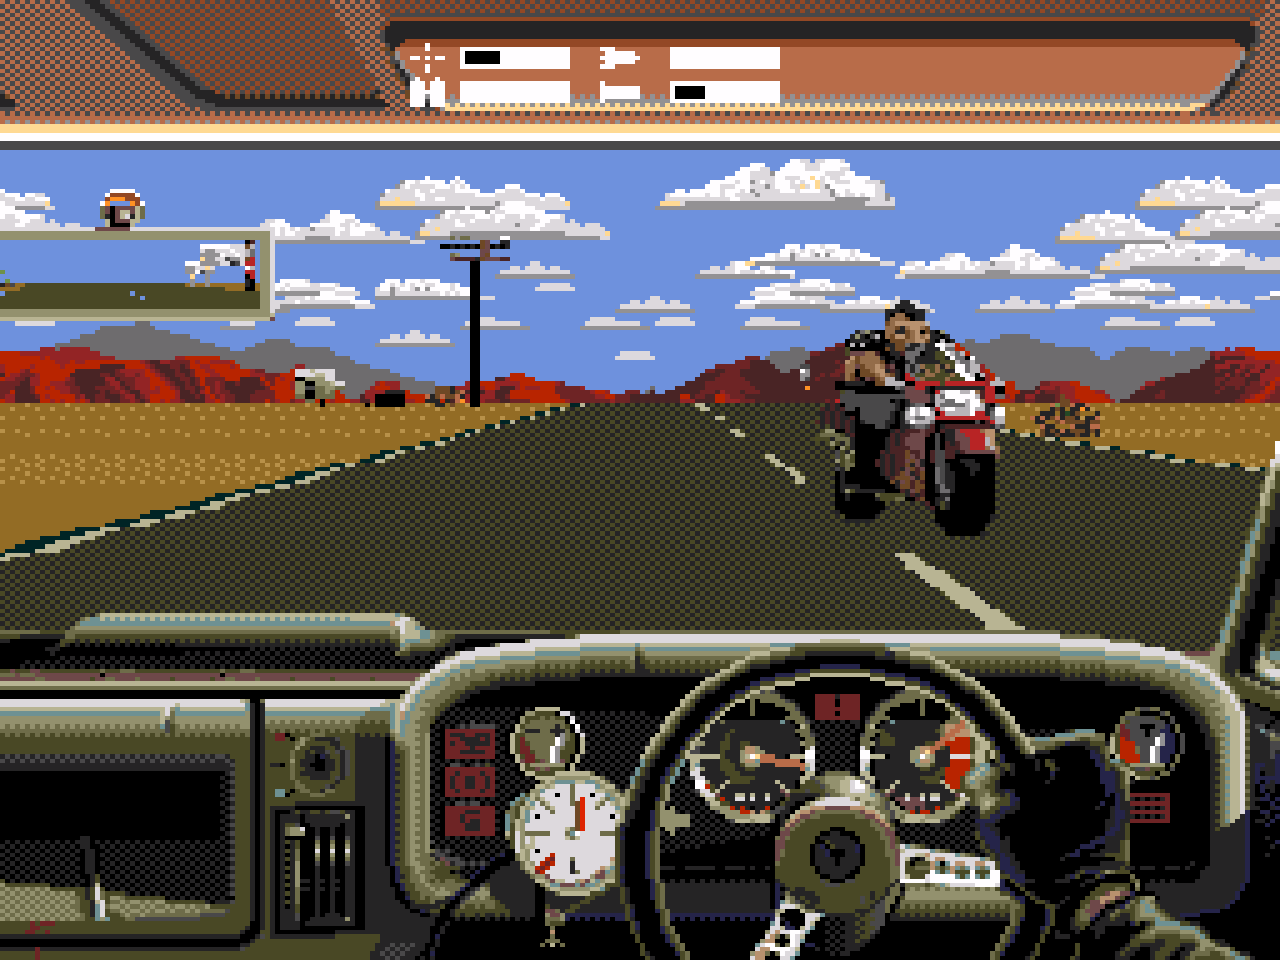 Игра на сега мотоциклы. Outlander игра сега. Джипики на сега. Sega Driver игра. ГТА на сегу 16 бит.